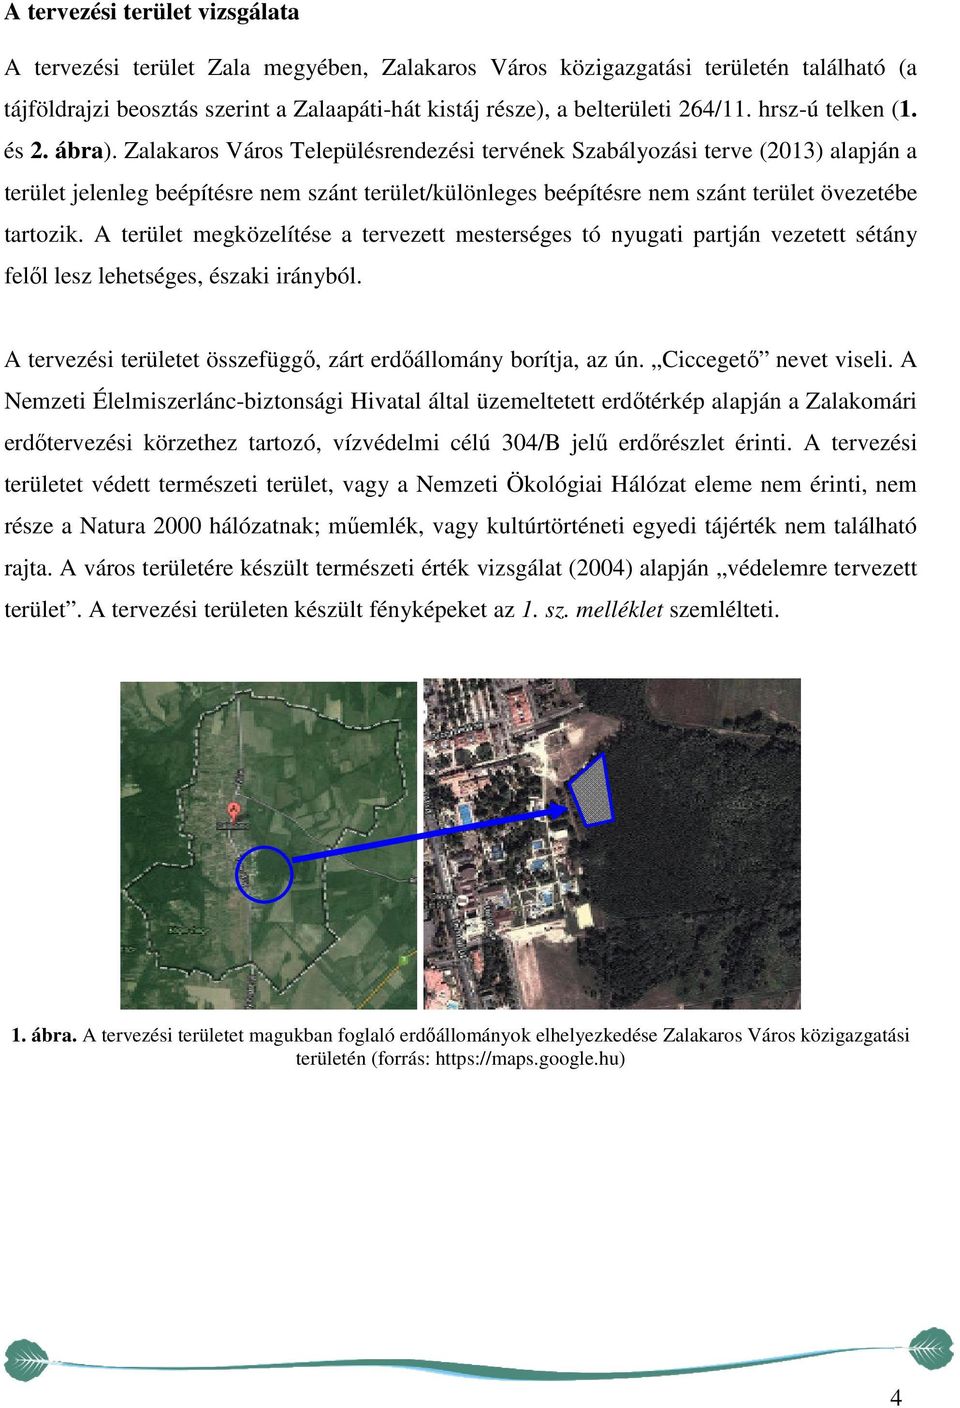 Zalakaros Város Településrendezési tervének Szabályozási terve (2013) alapján a terület jelenleg beépítésre nem szánt terület/különleges beépítésre nem szánt terület övezetébe tartozik.